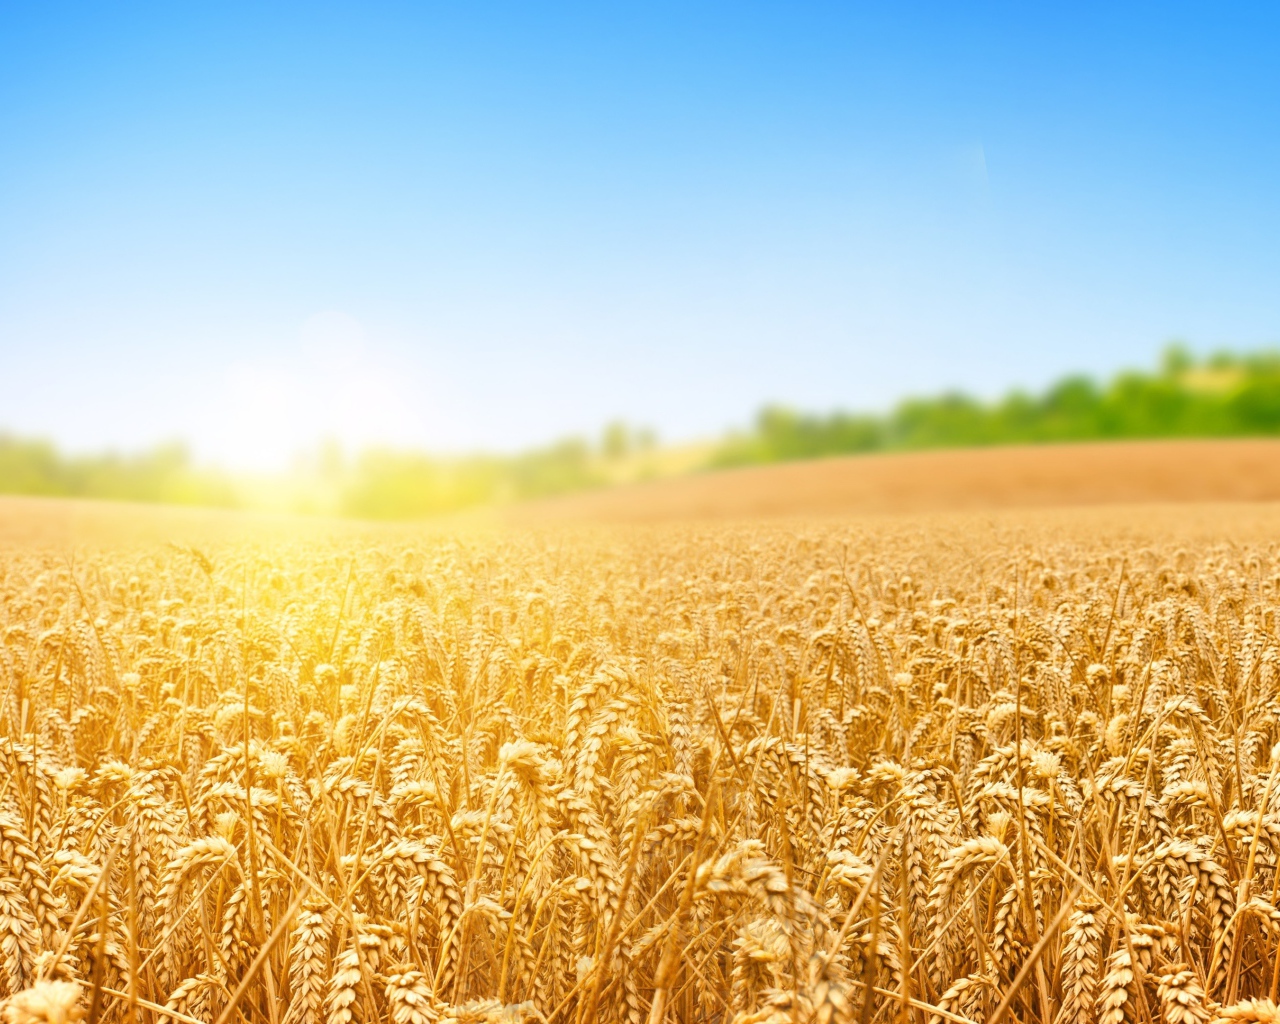 Поле золотой пшеницы в лучах яркого солнца